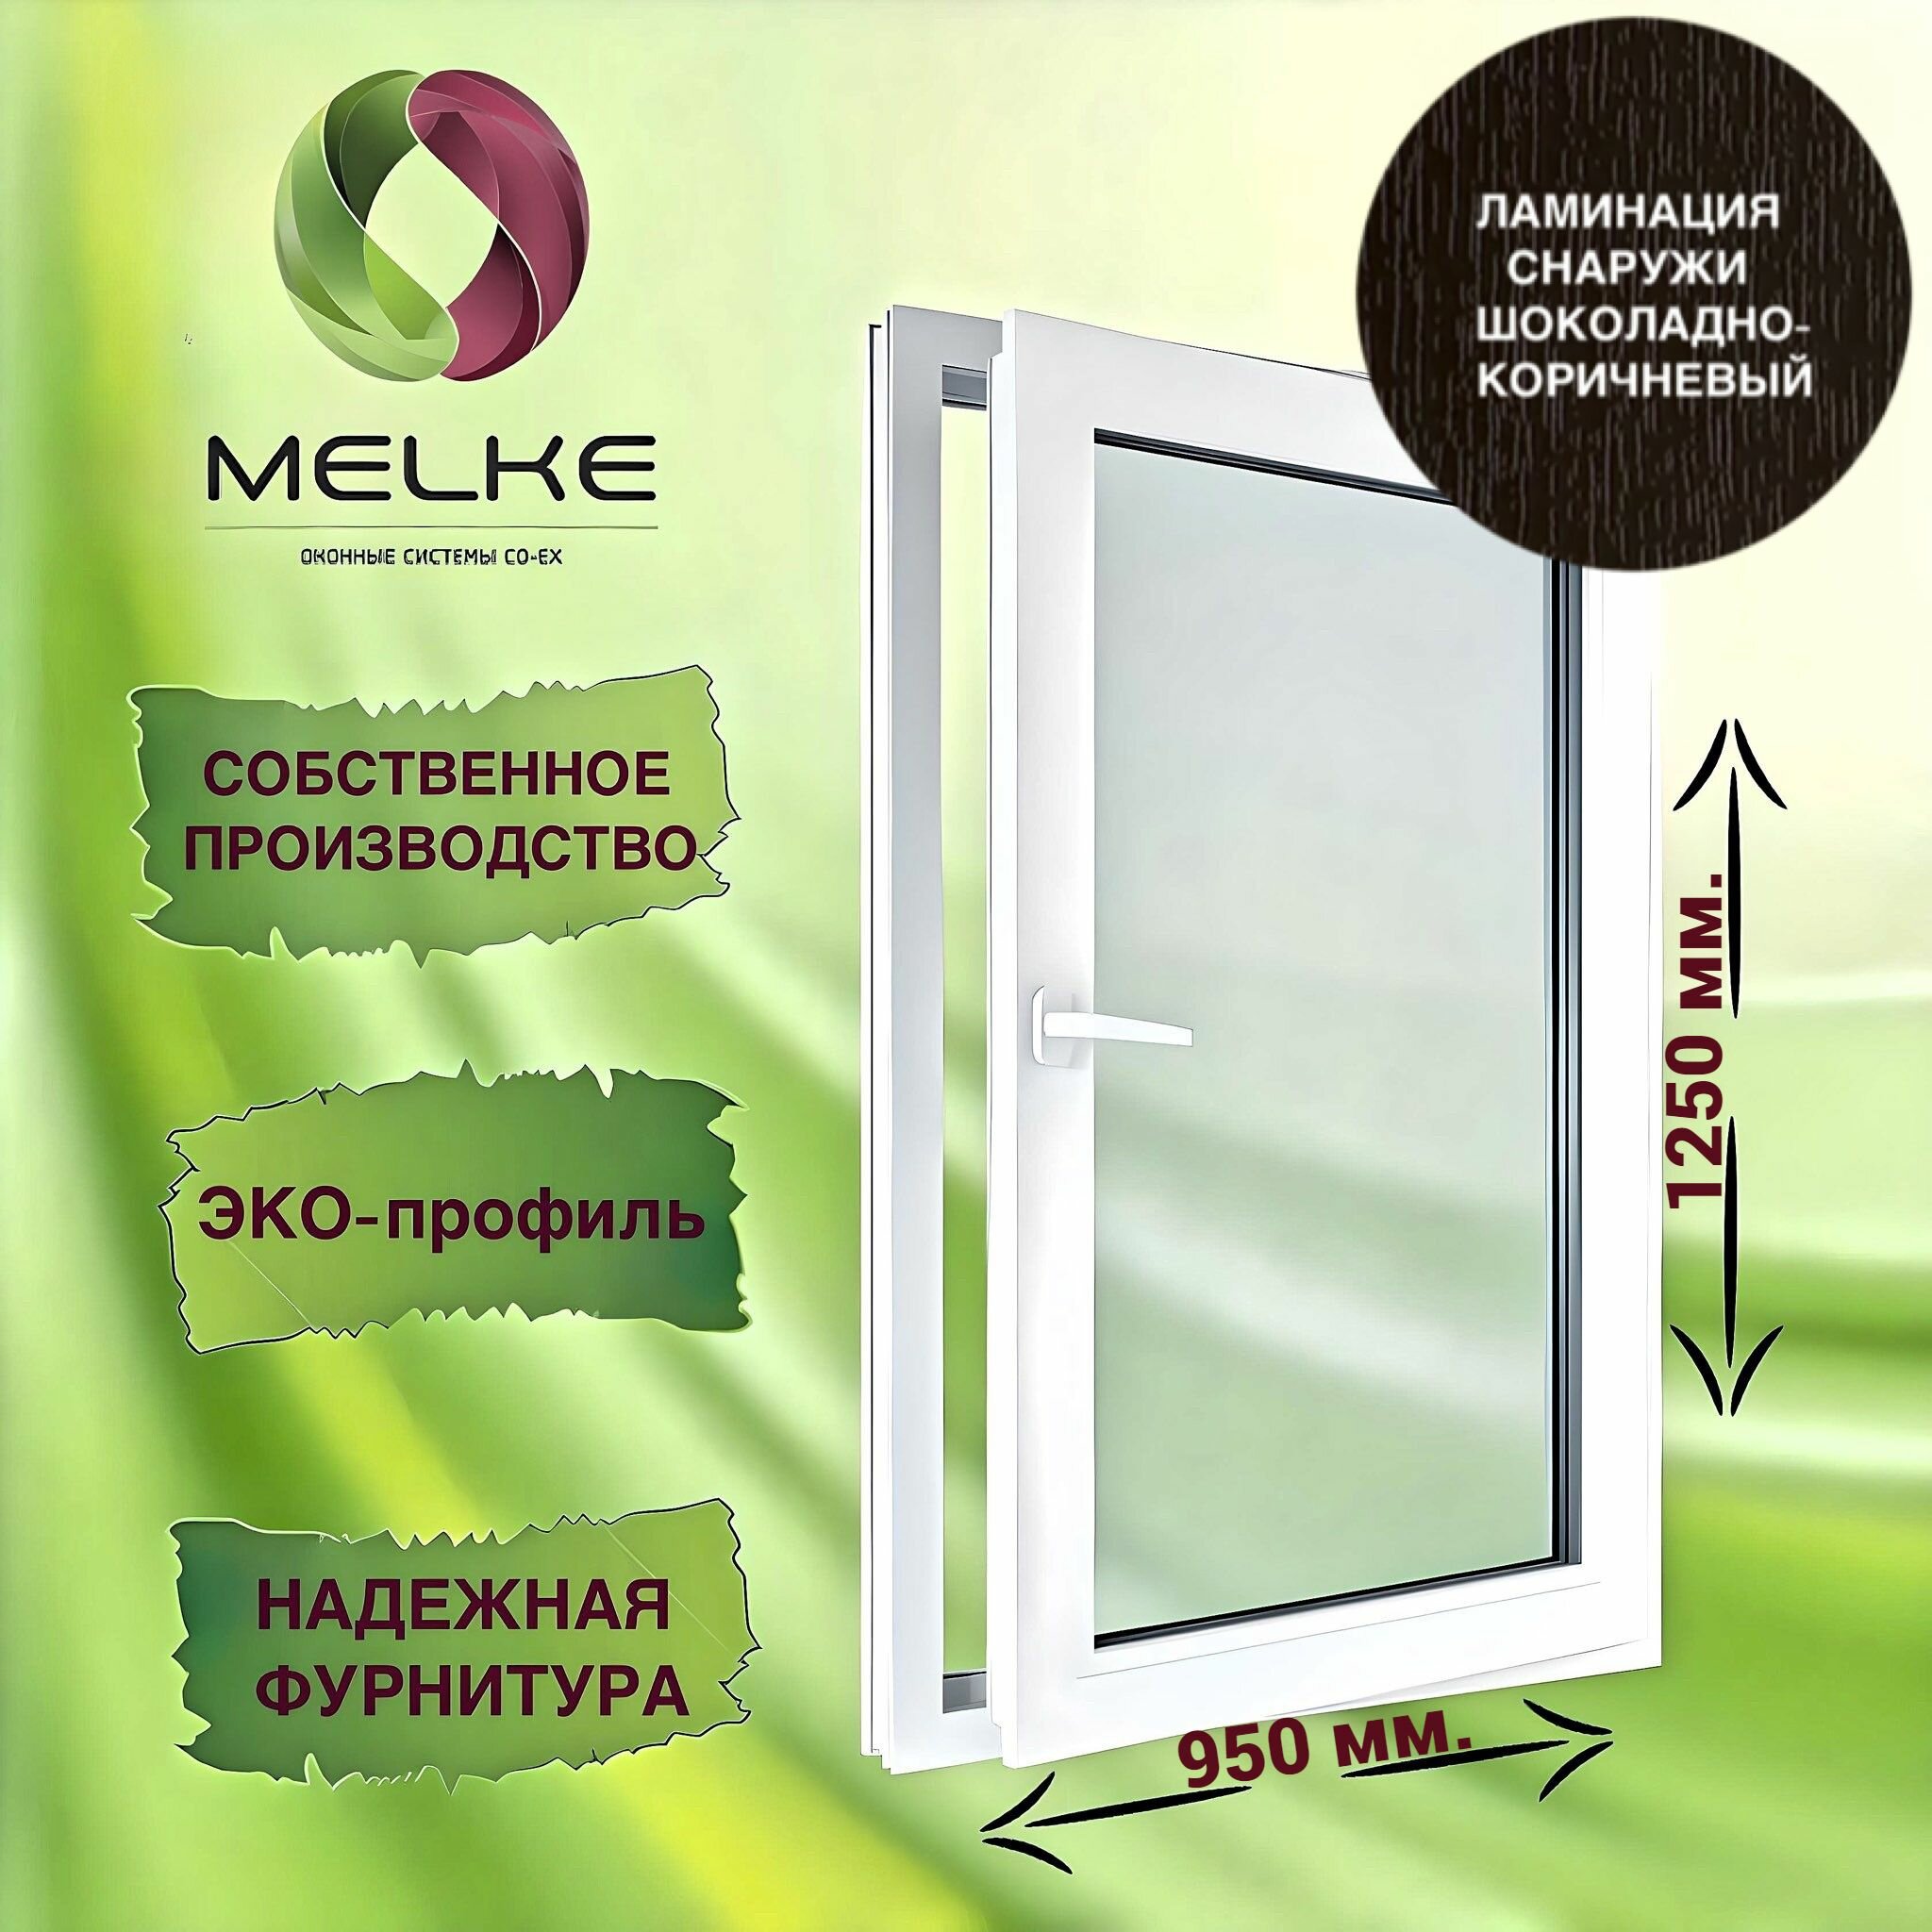 Окно 1250 х 950 мм, Melke 60 (Фурнитура FUTURUSS), правое одностворчатое, поворотно-откидное, цвет внешней ламинации Шоколадно-коричневый, 2-х камерный стеклопакет, 3 стекла